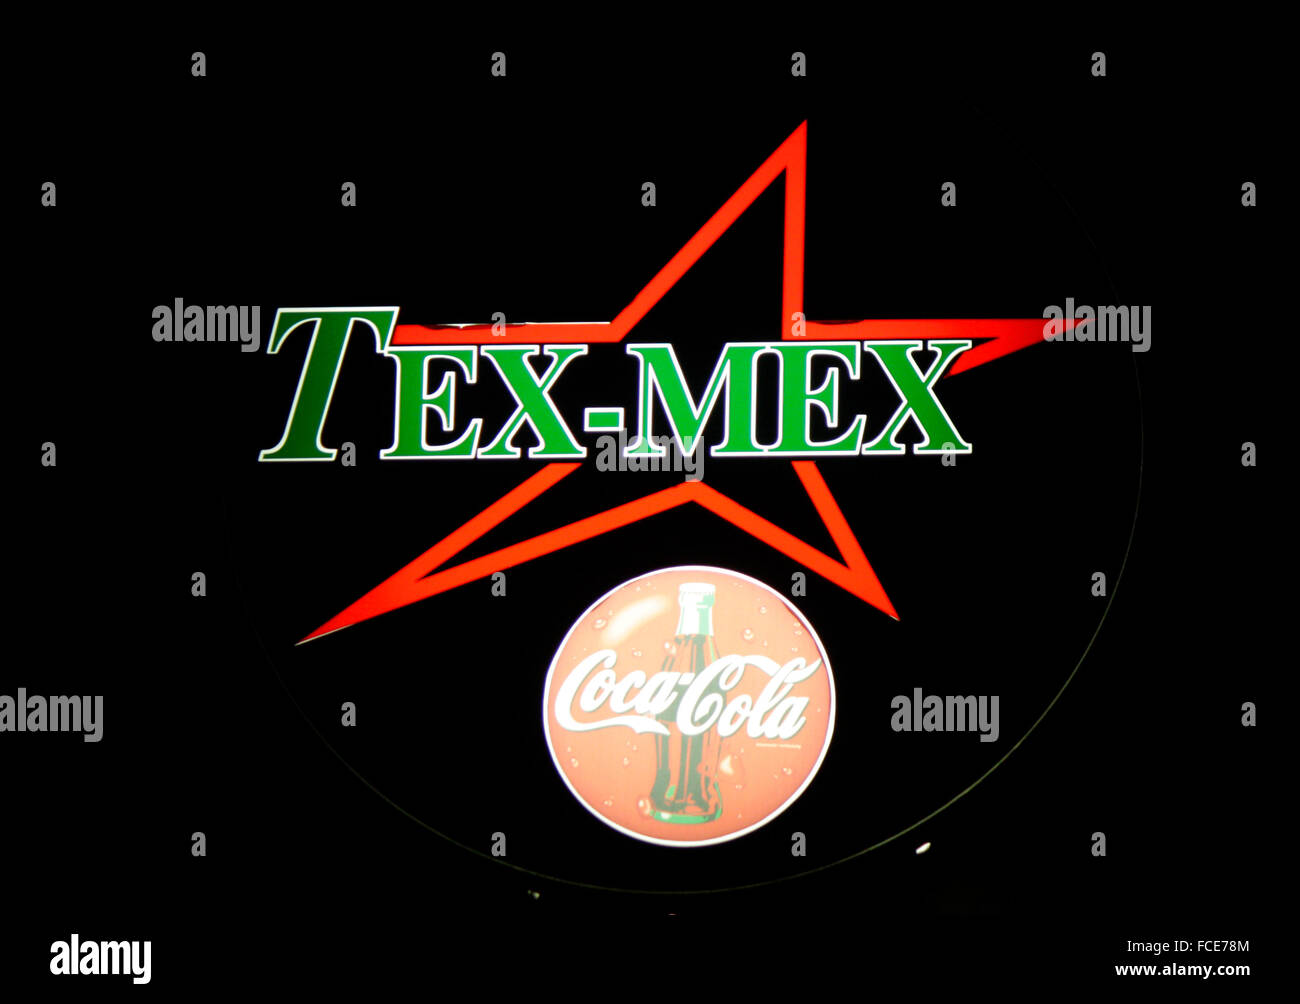 Markenname: 'Tex Mex" , "Coca Cola', Berlino. Foto Stock